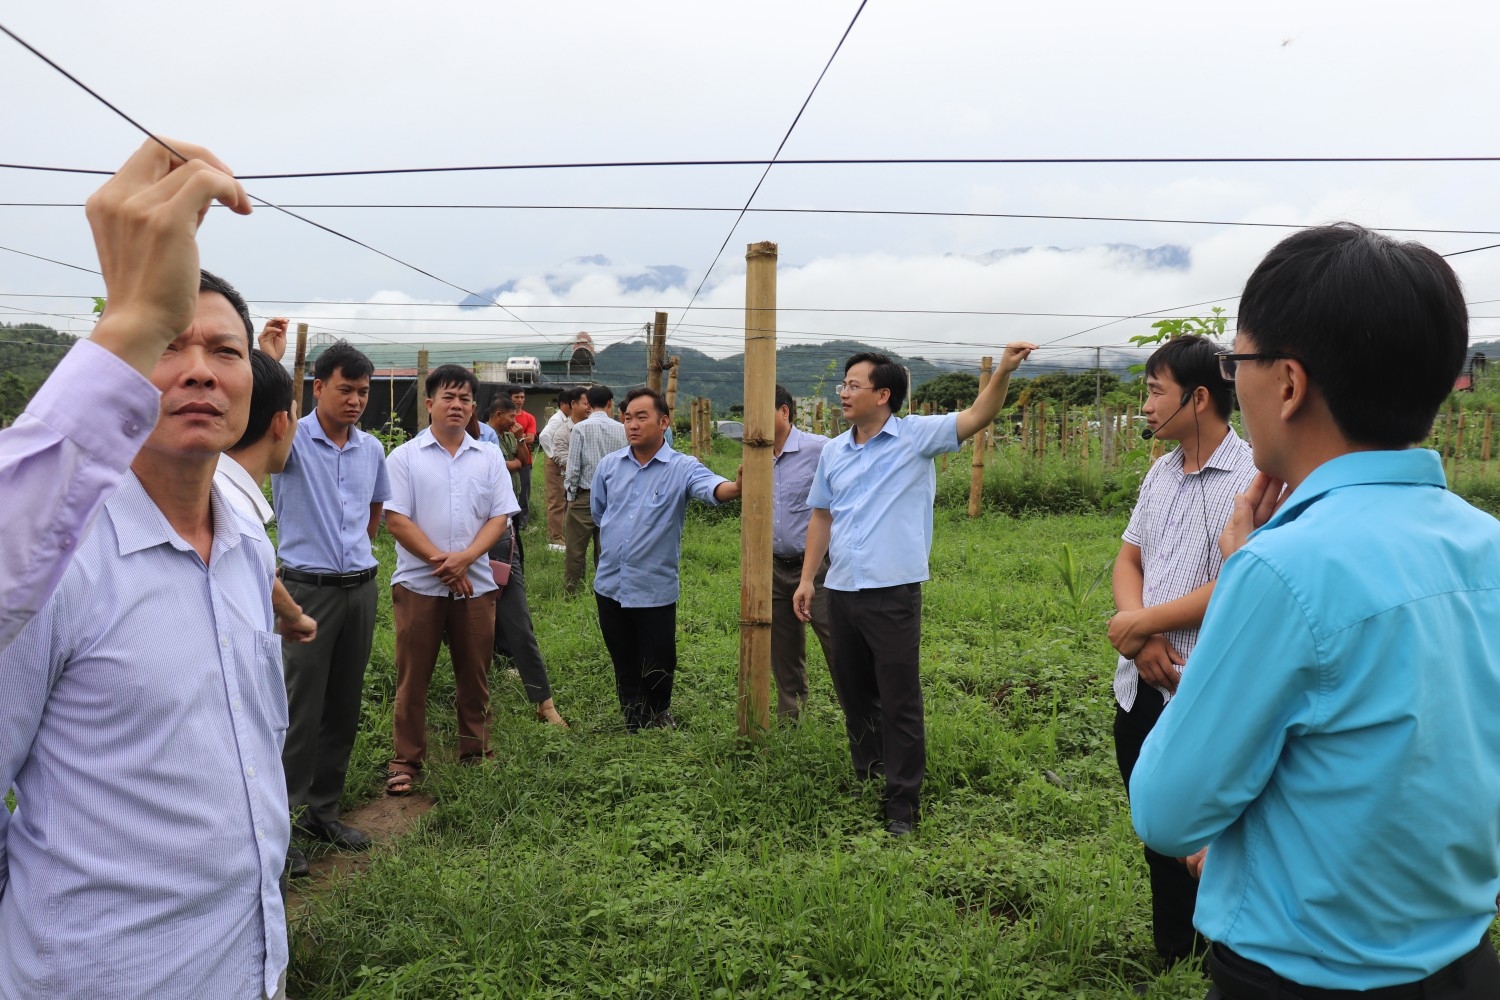 Cán bộ nông nghiệp hướng dẫn người dân làm giàn trồng cây chanh leo